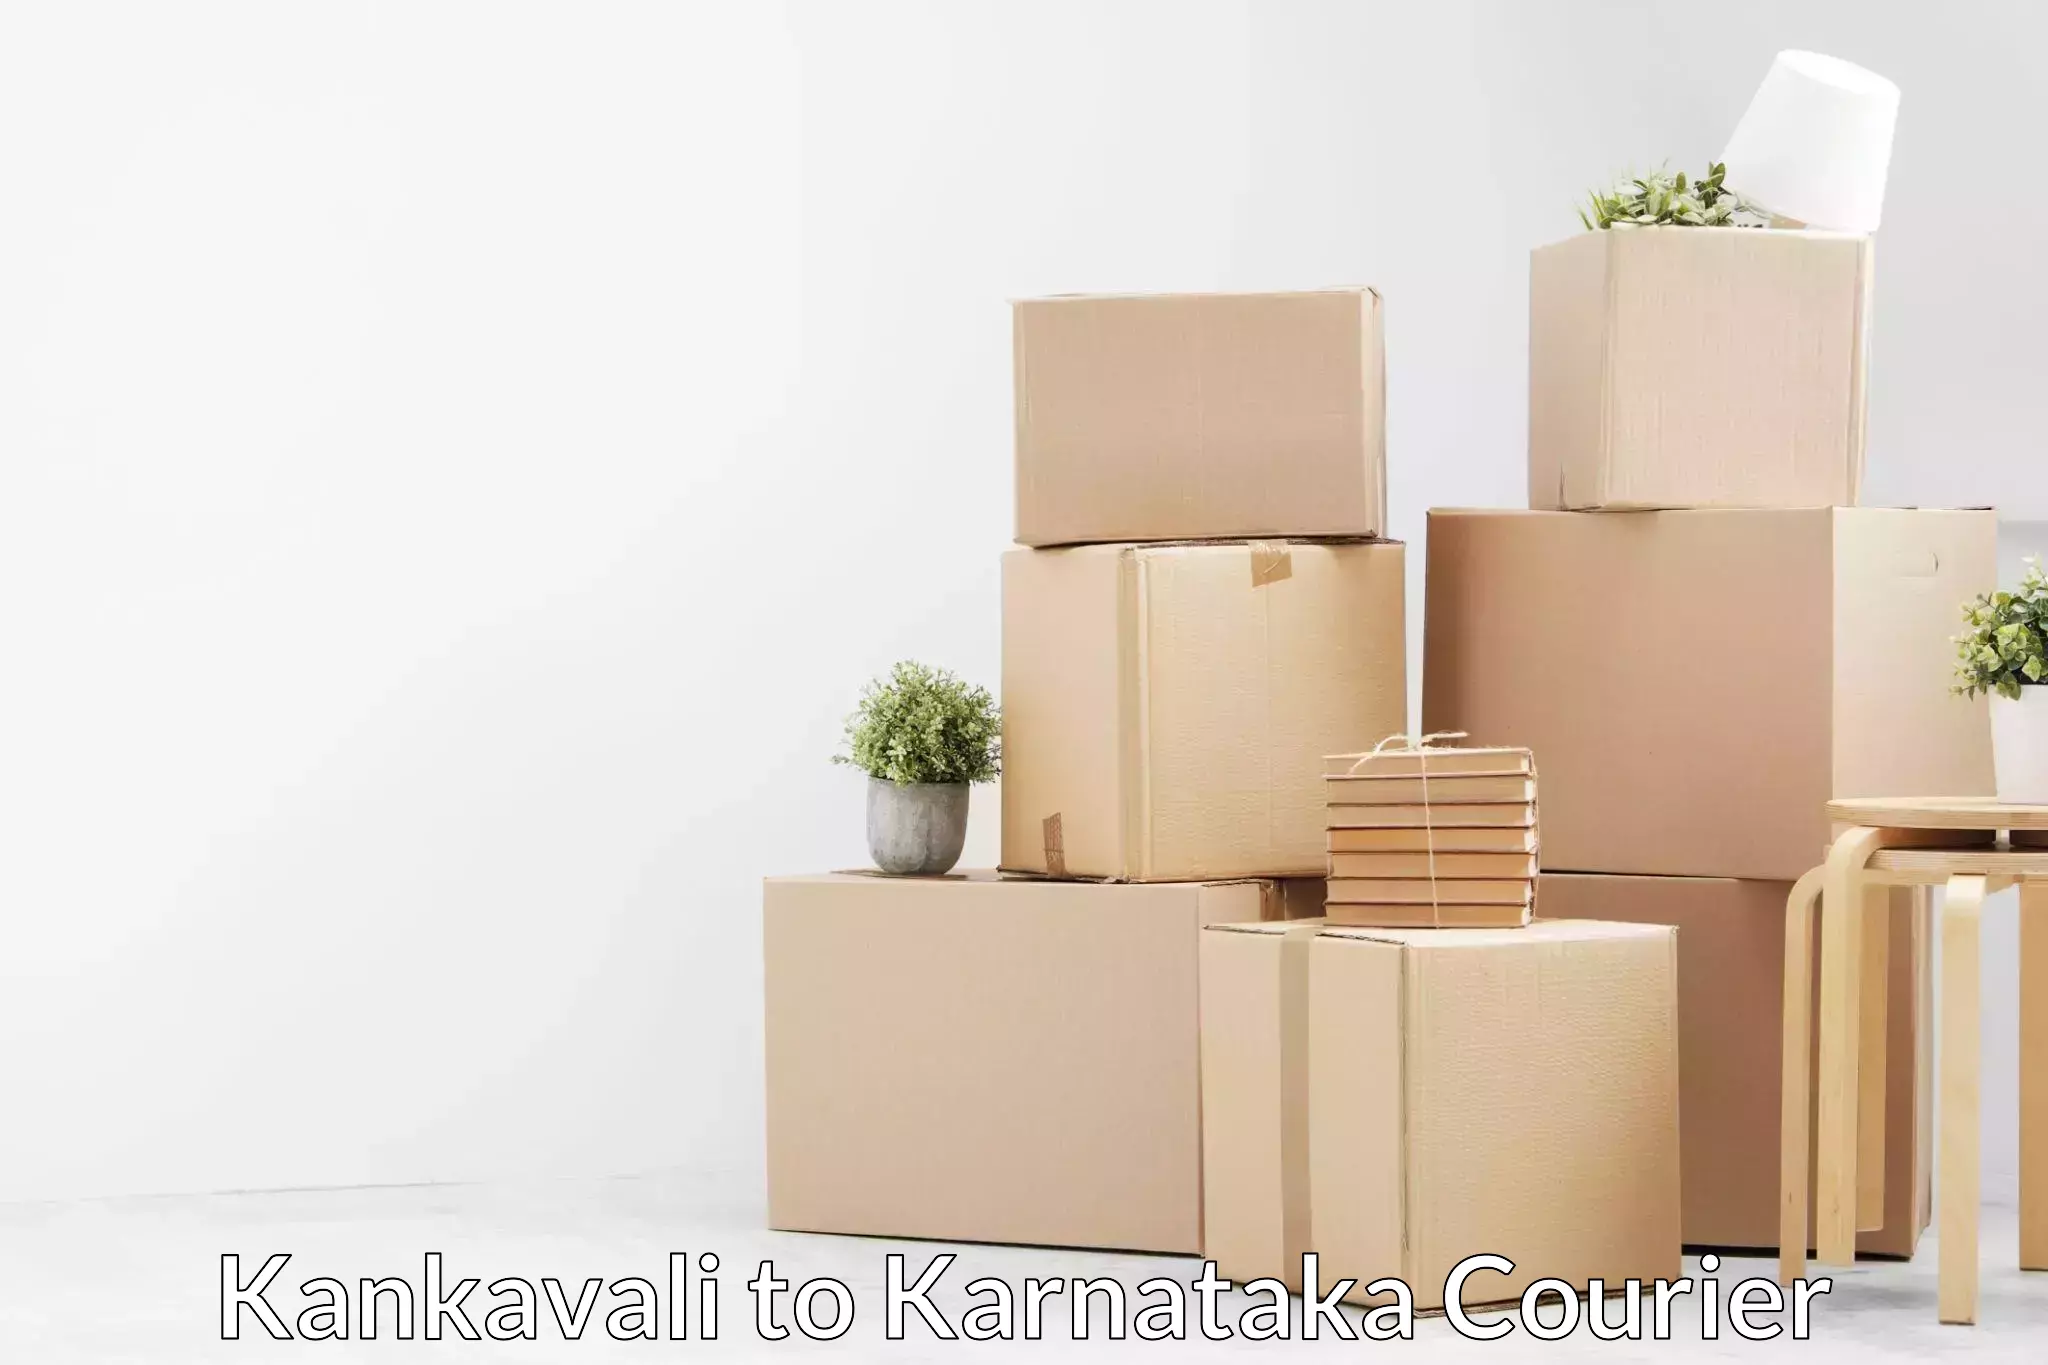 Furniture transport company Kankavali to Karnataka